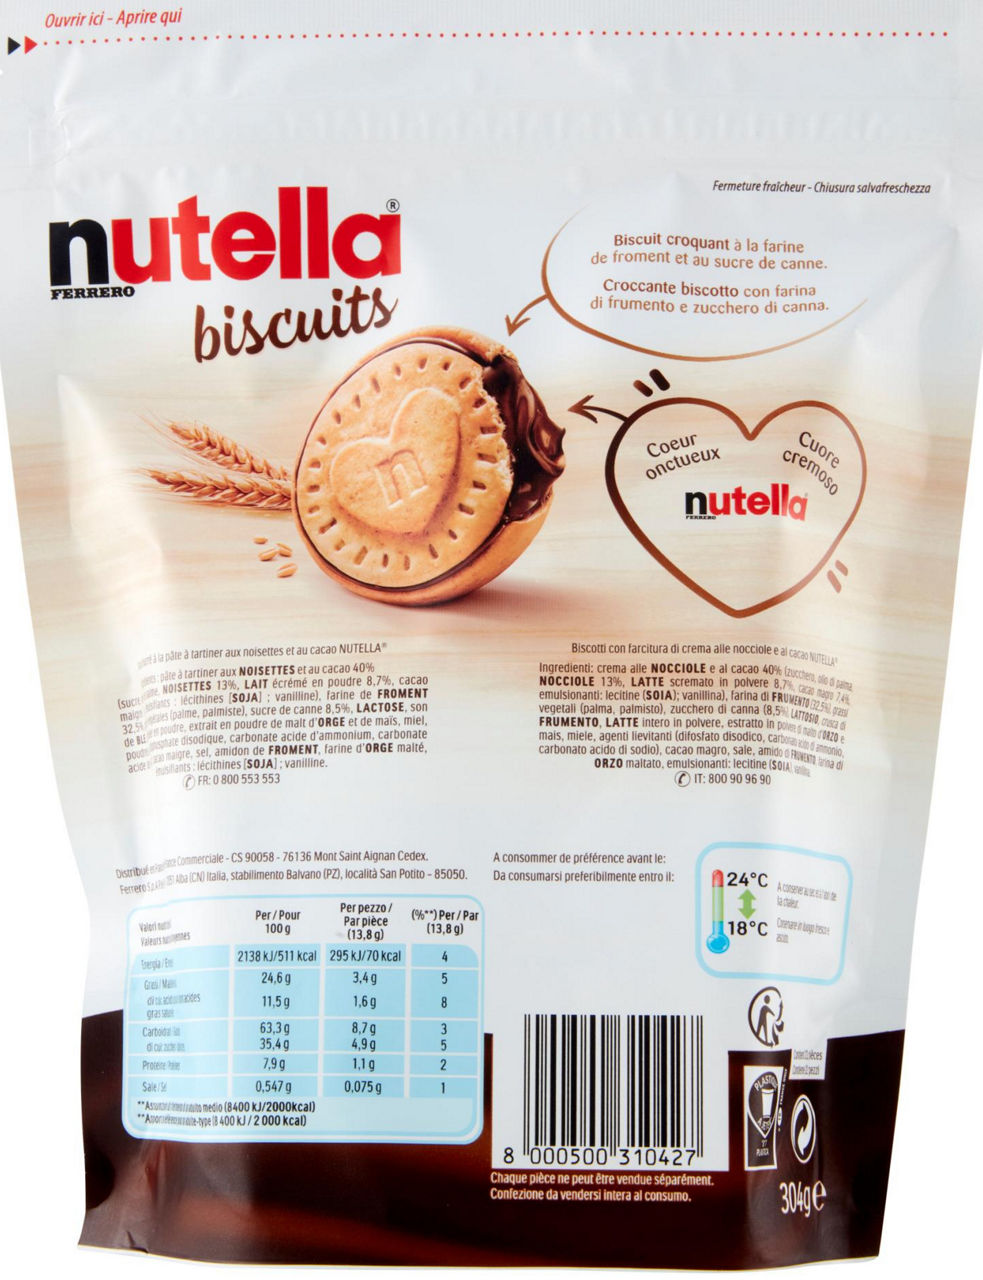 nutella biscuits 304 g - 4